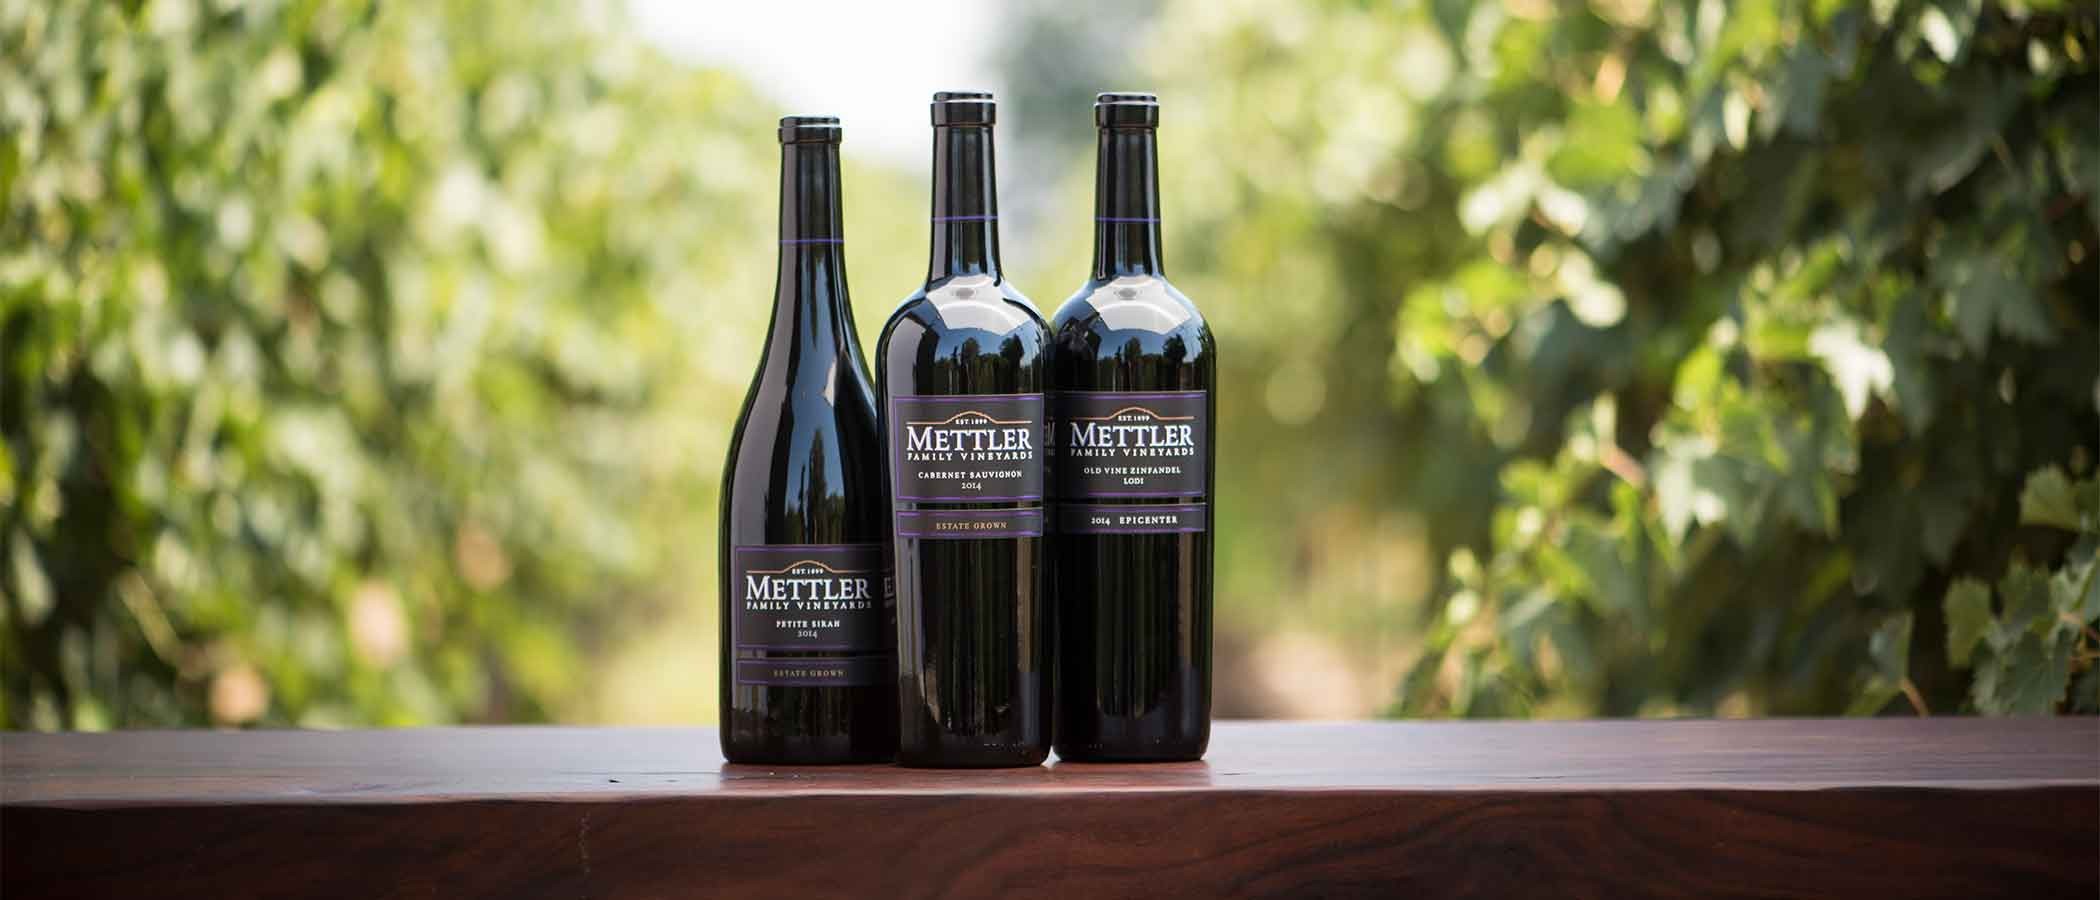 Mettler bottles